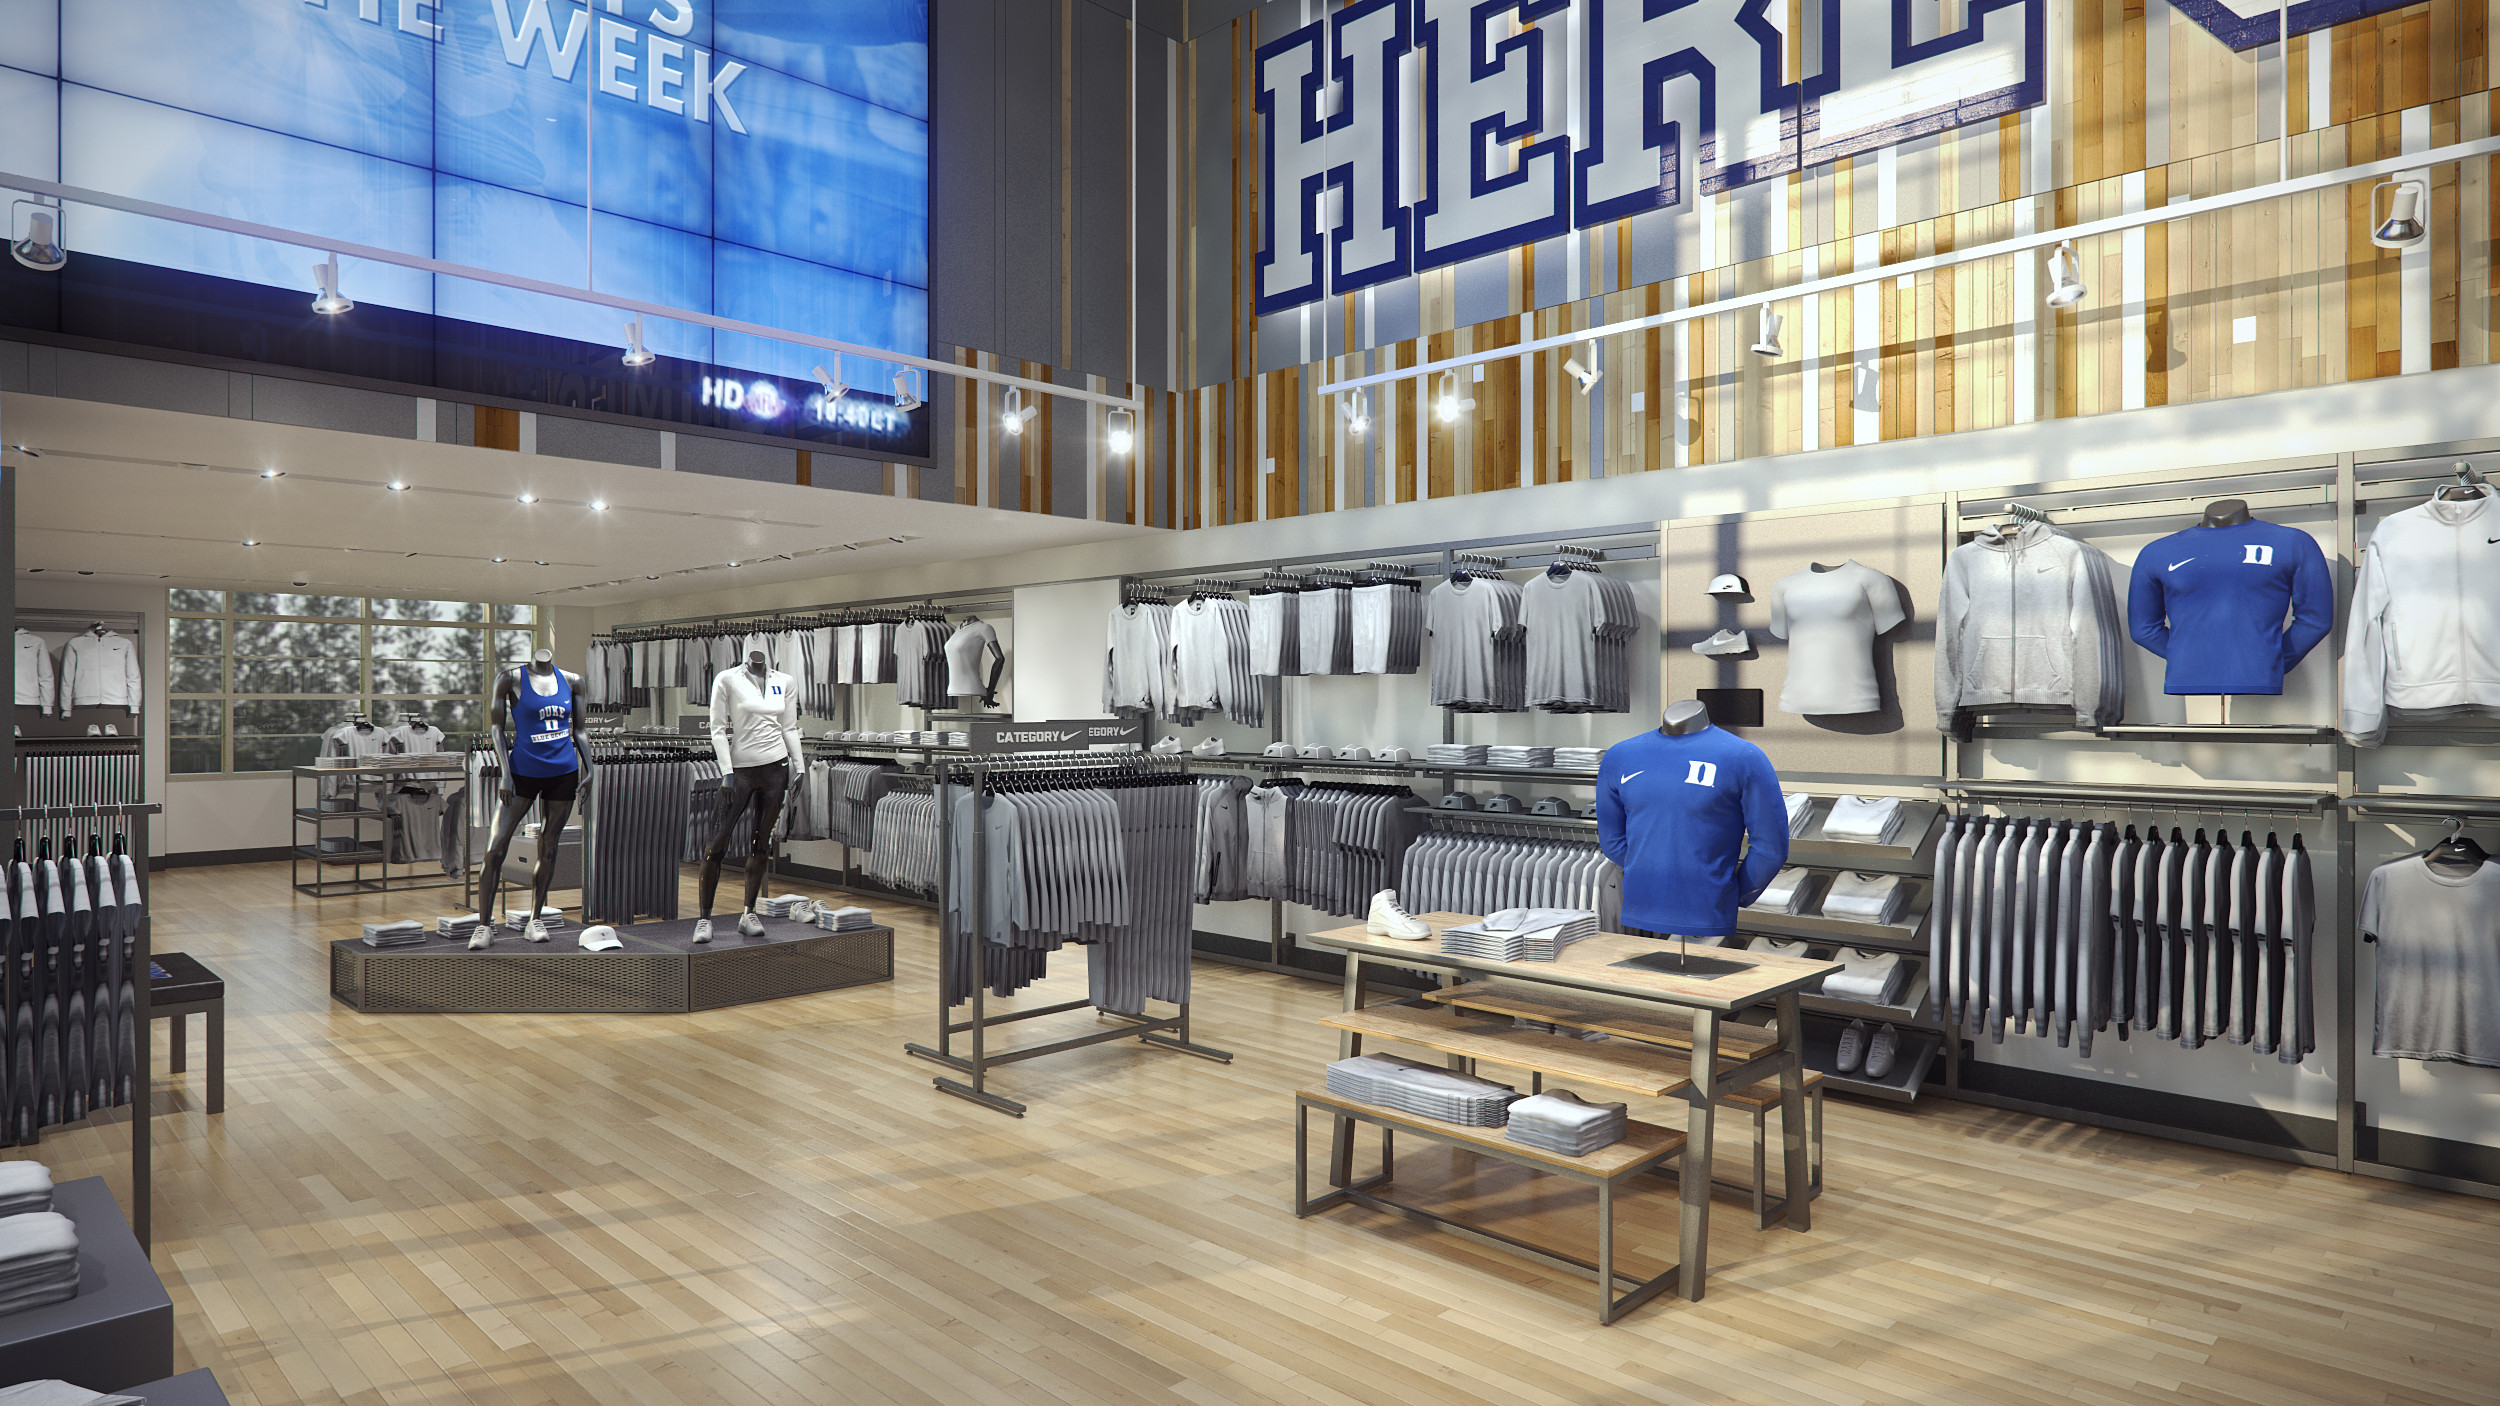 ArtStation - Duke University Nike Store 